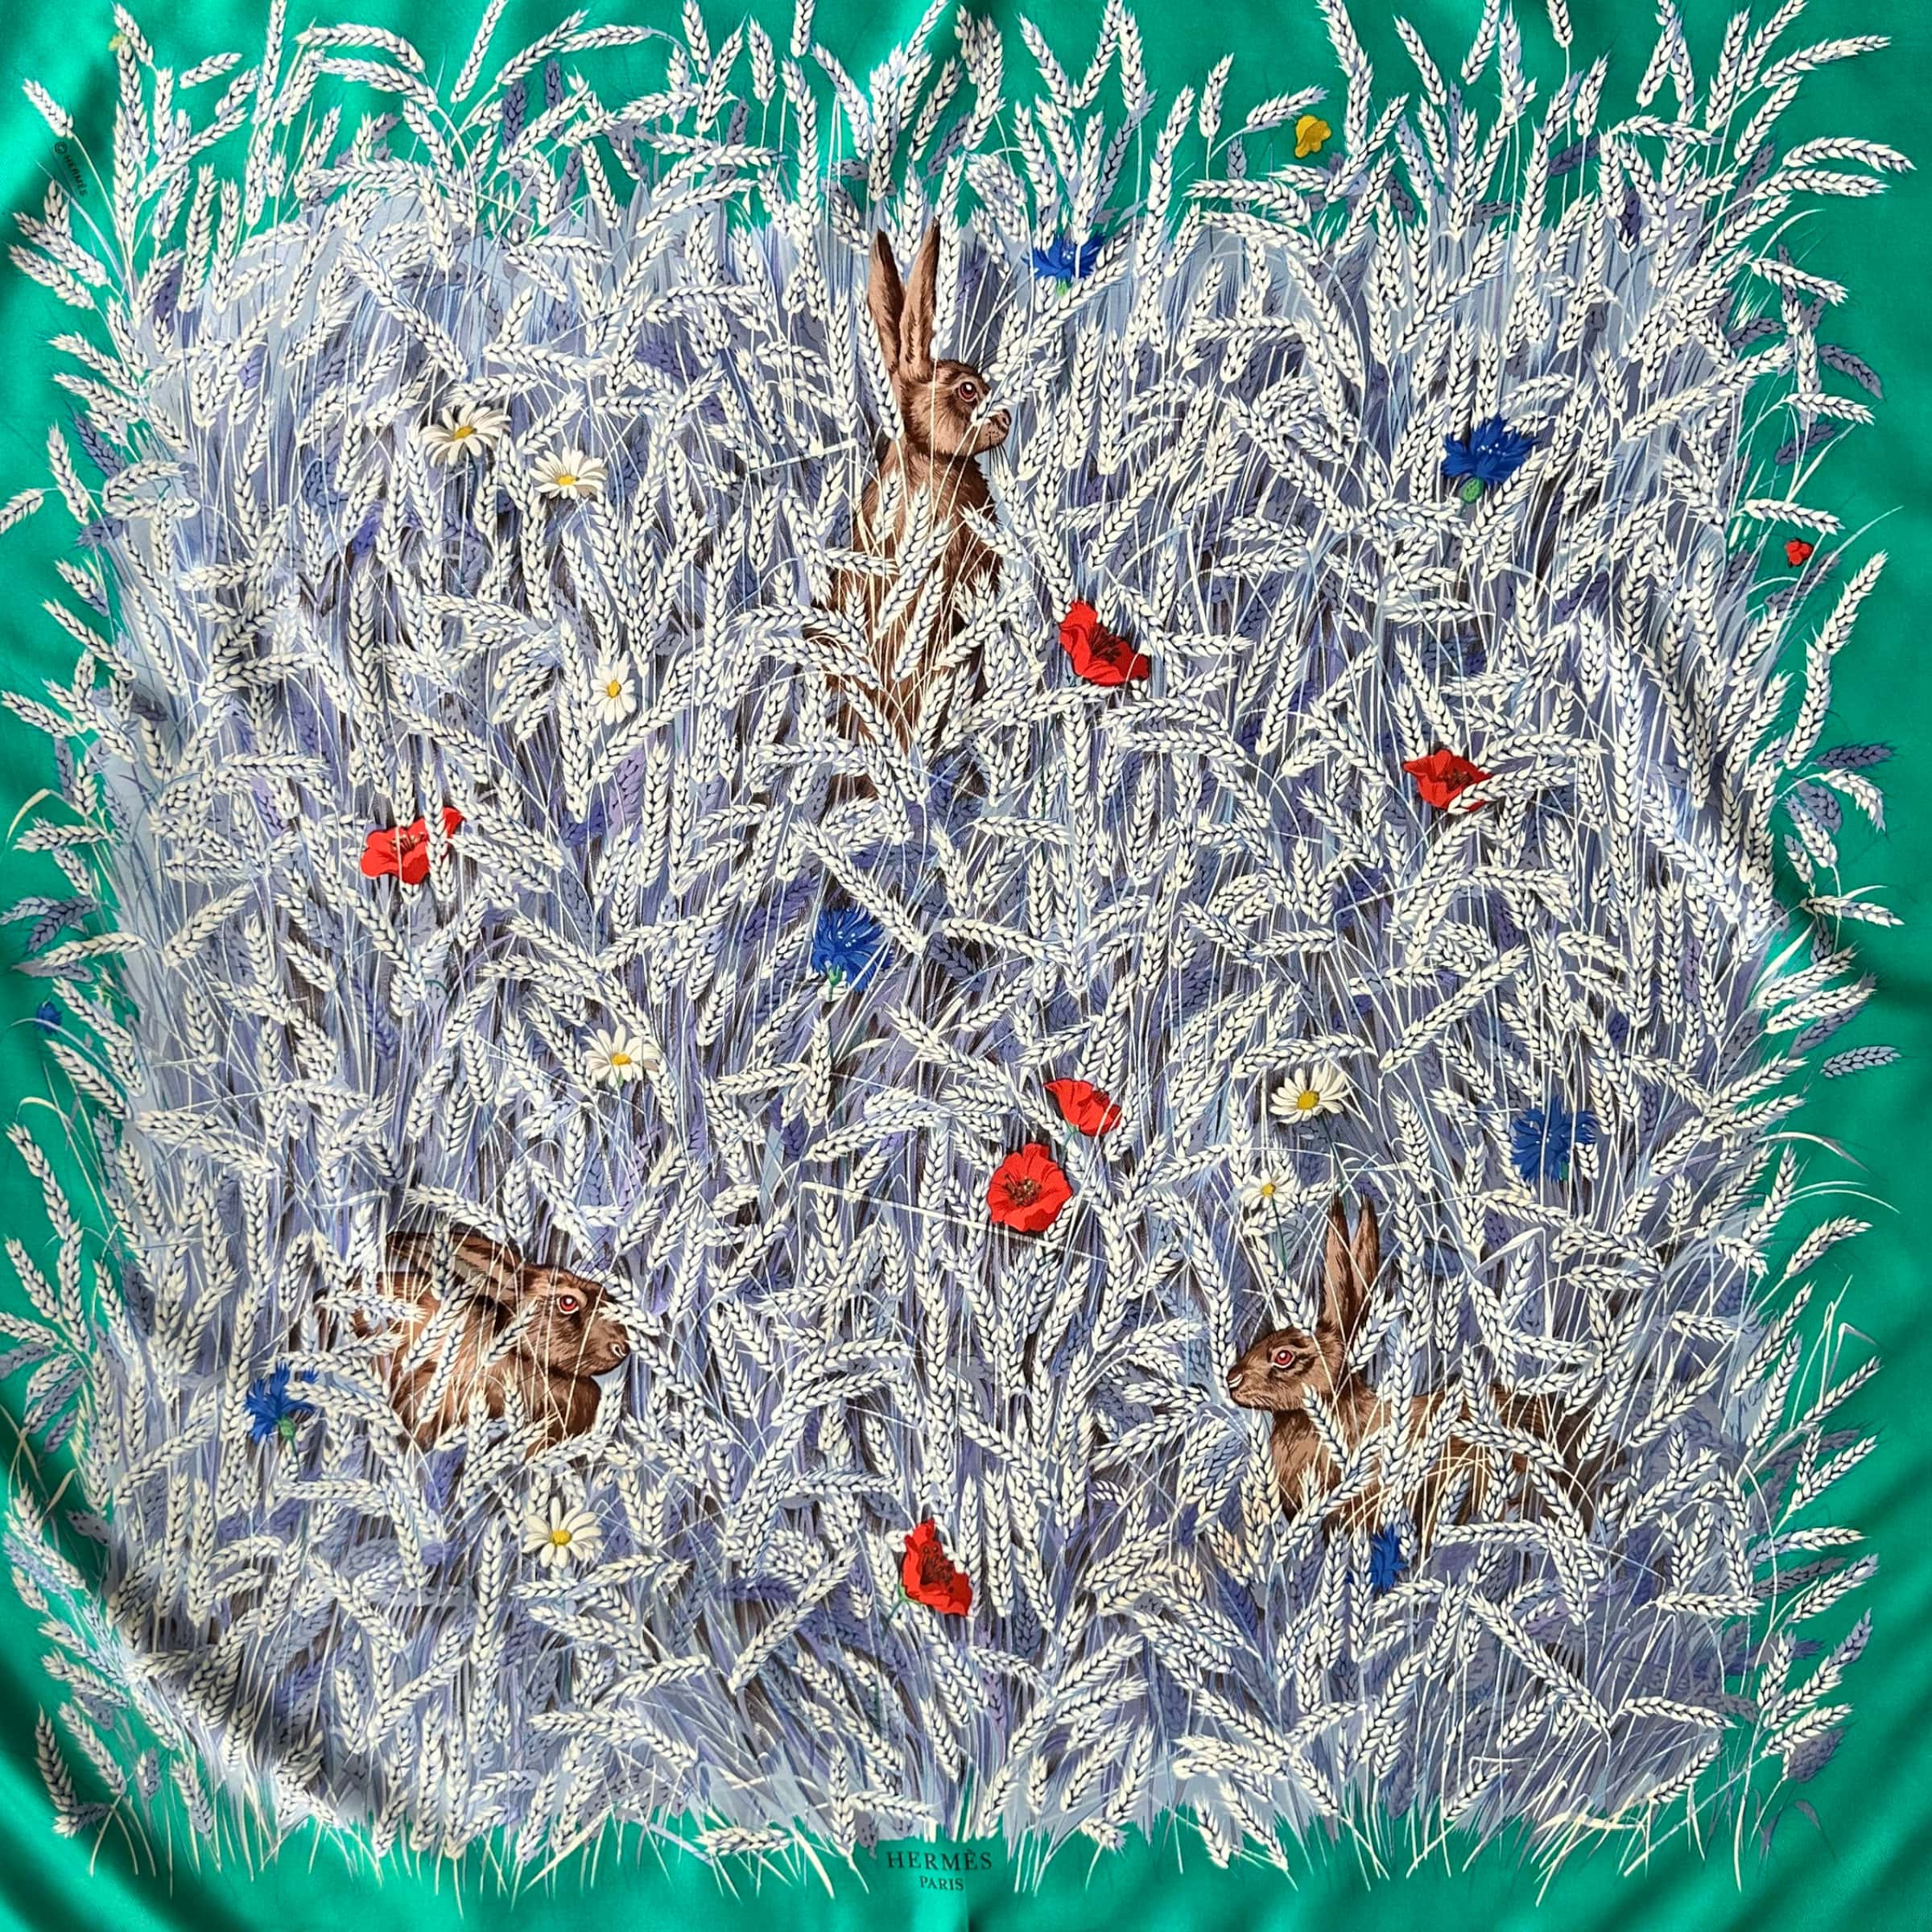 trois lapins dans les blés illustrent la finesse du dessin de Hugo Grygkar